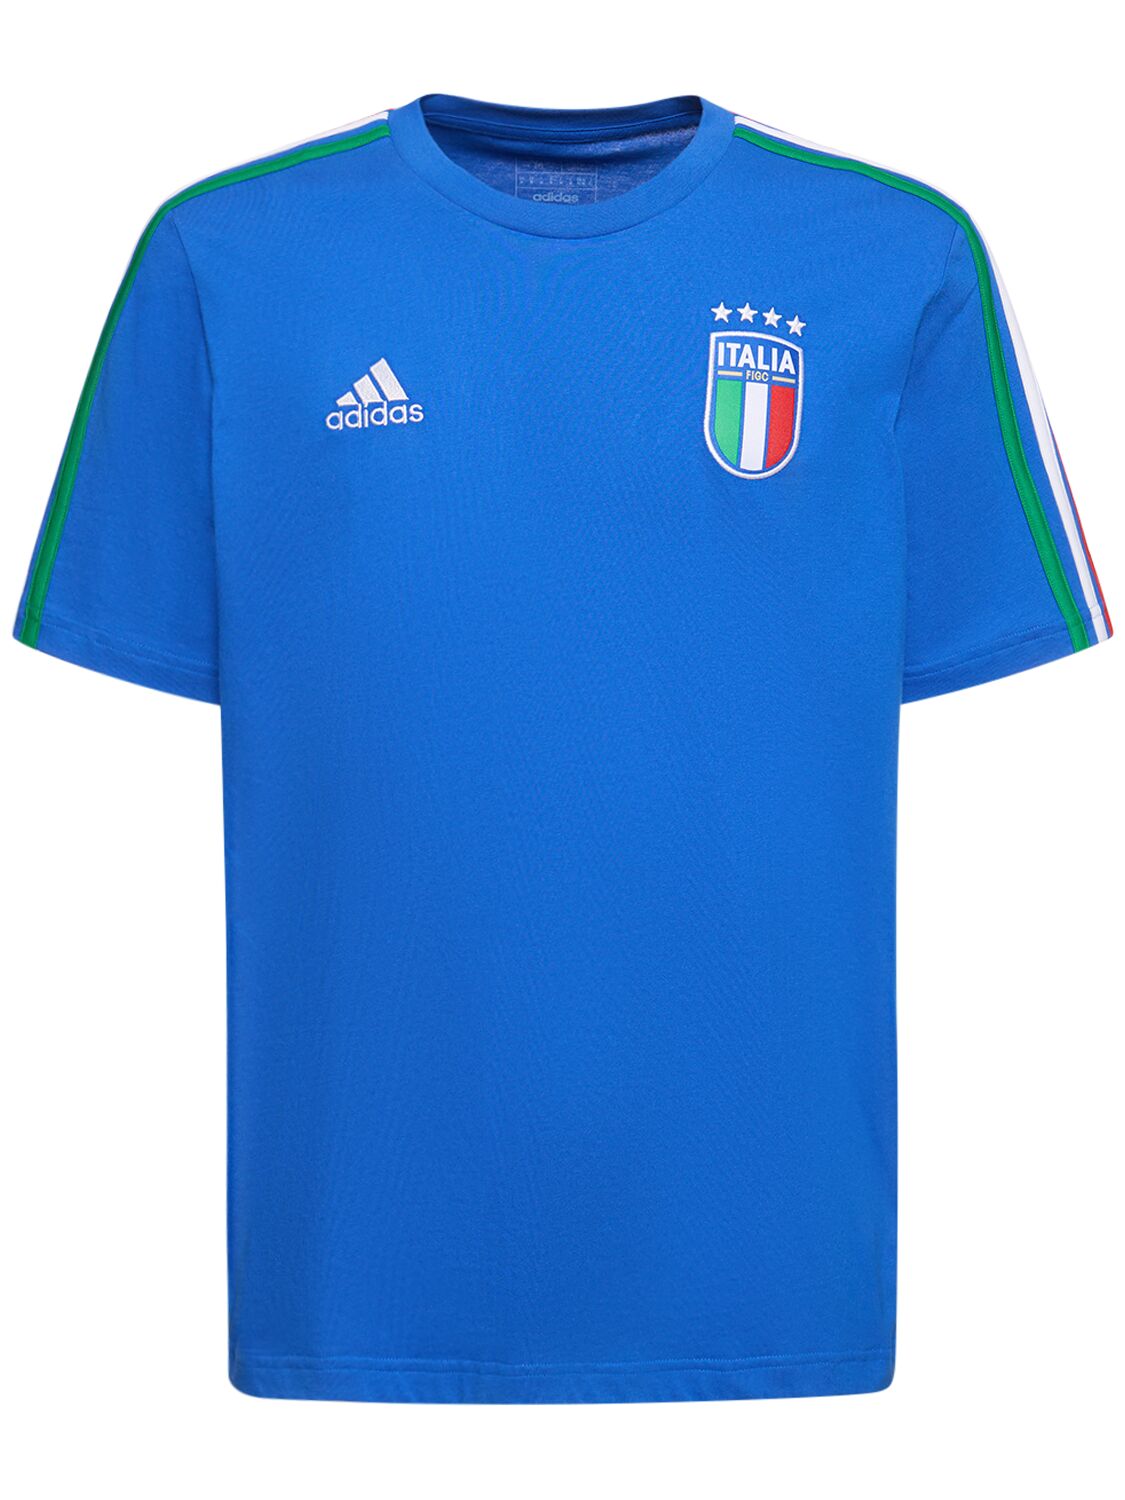 Adidas Originals Italy T恤 In Blue